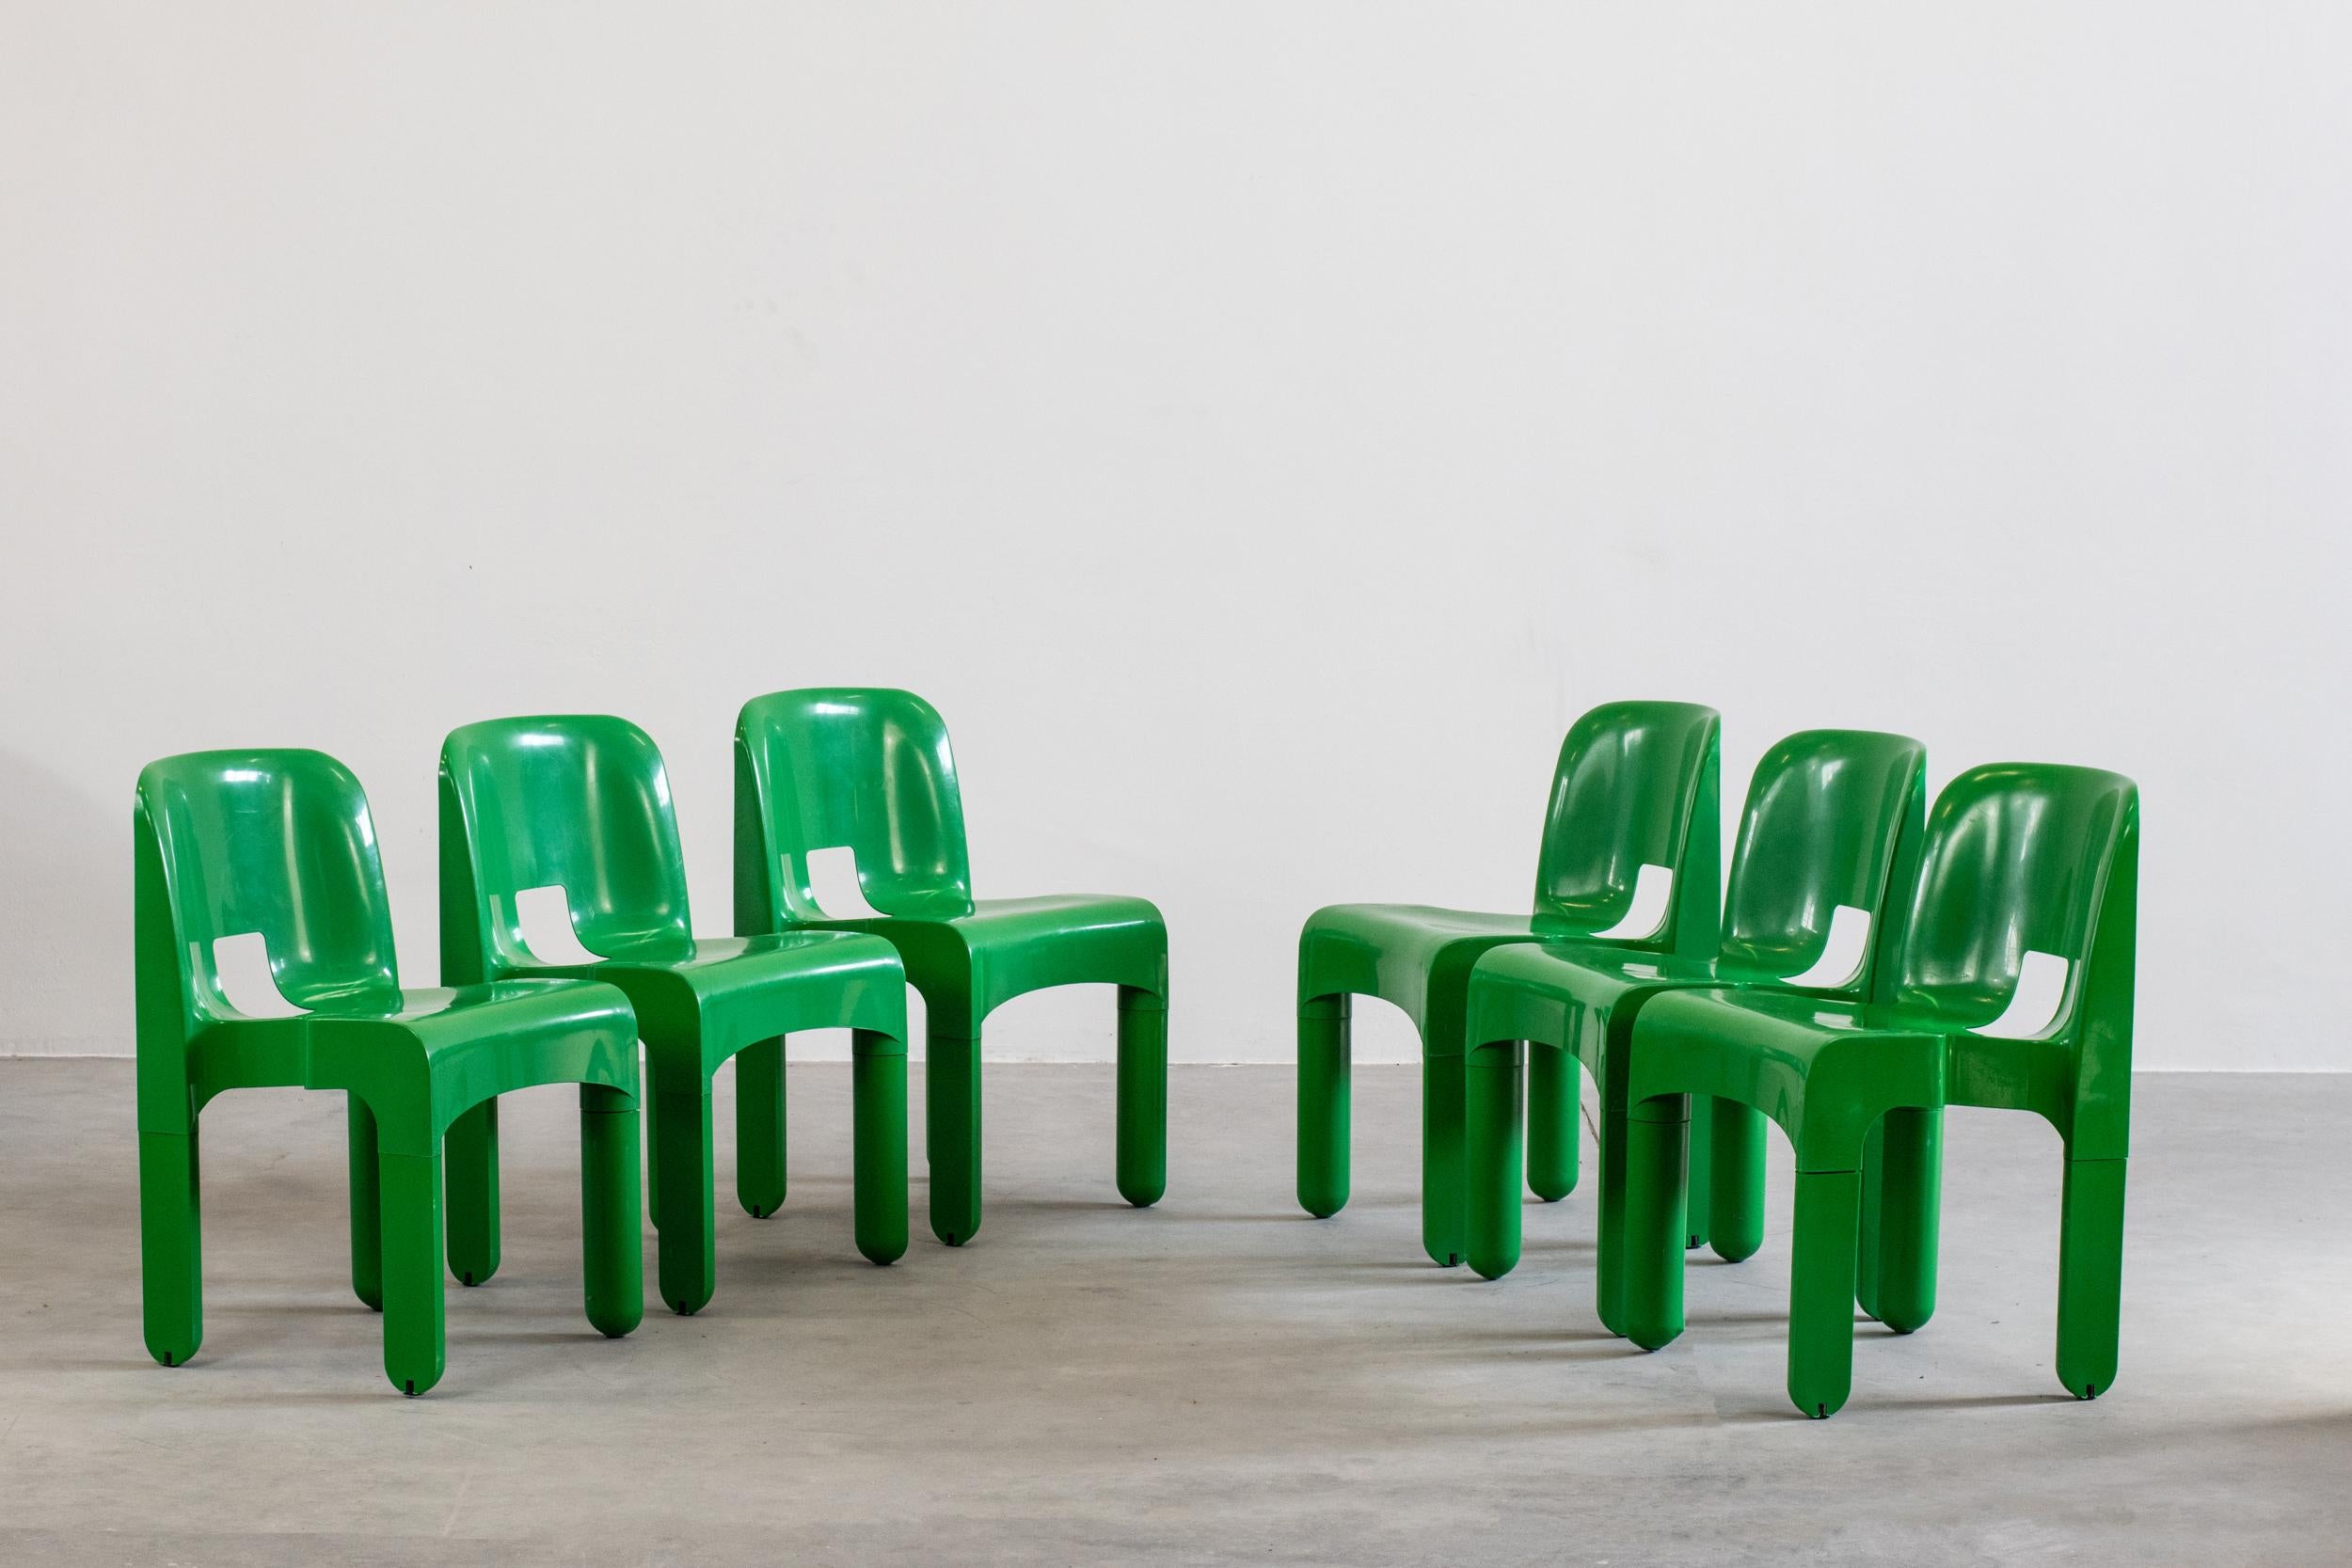 Ensemble de six chaises Universale en plastique vert:: conçues par Joe Colombo et produites par Kartell à la fin des années 60. 

(également pour une utilisation en extérieur).